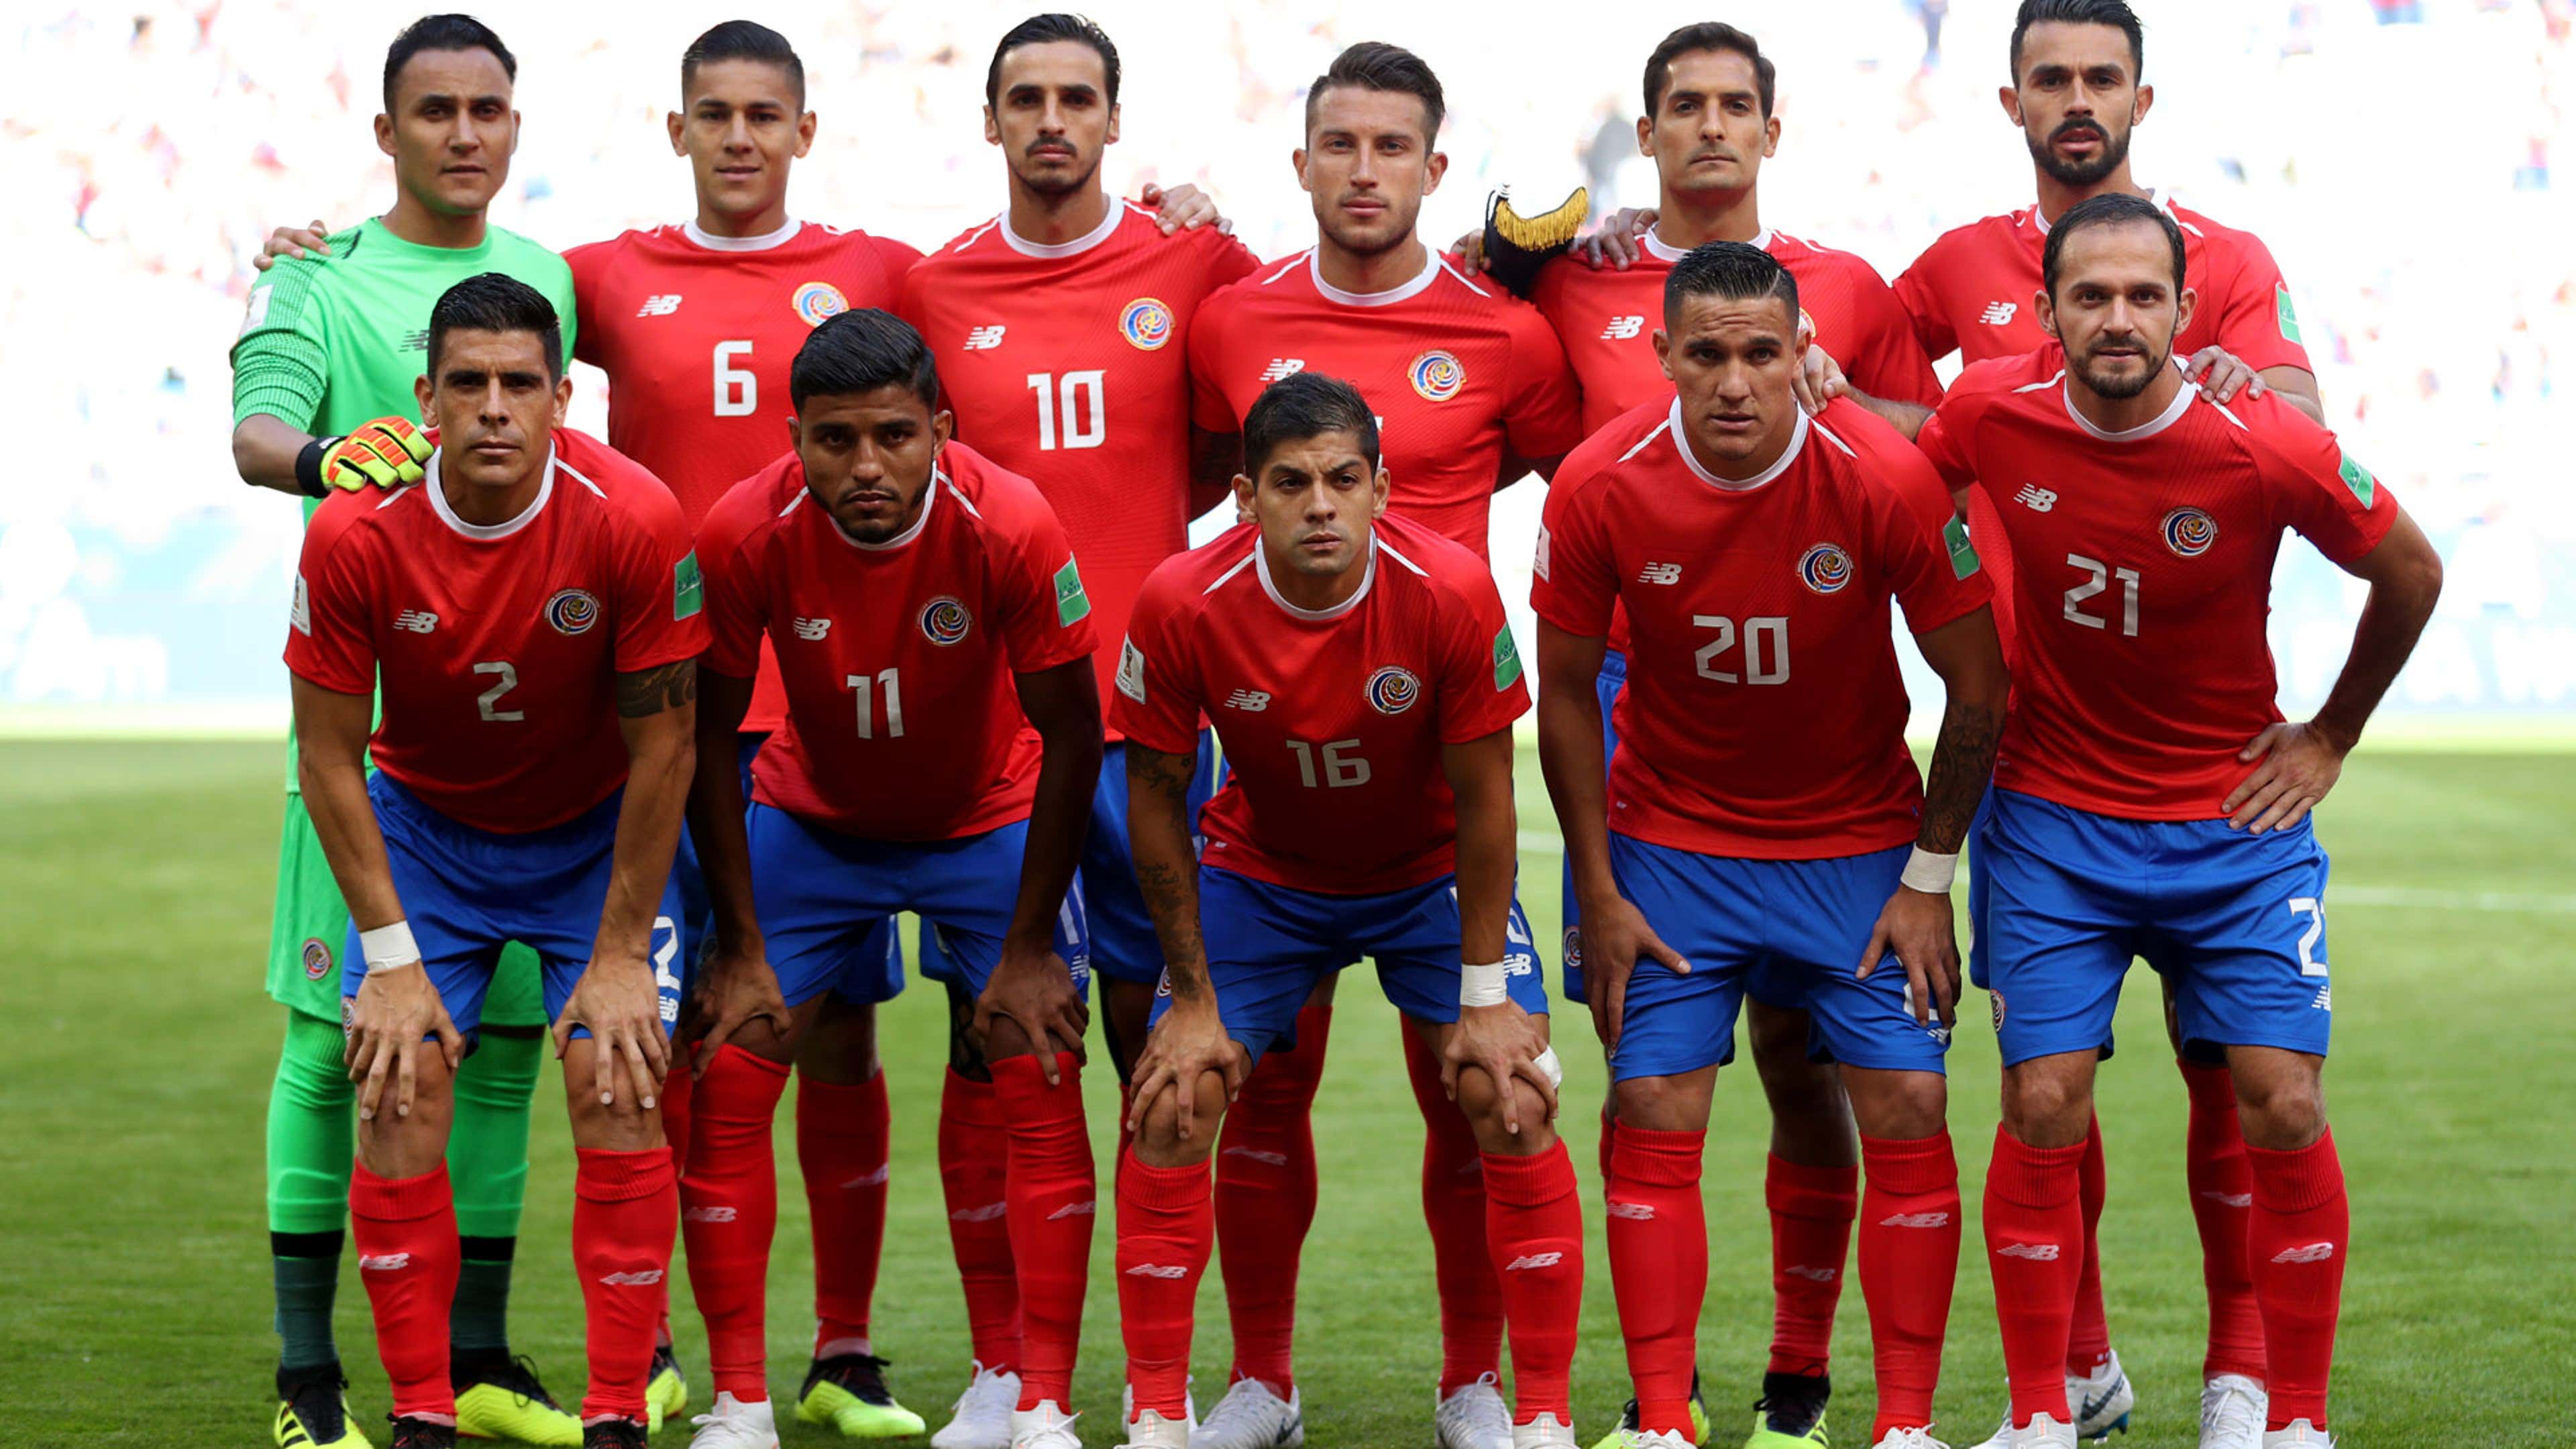 Costa Rica 2018 WM Kader Highlights Ergebnisse